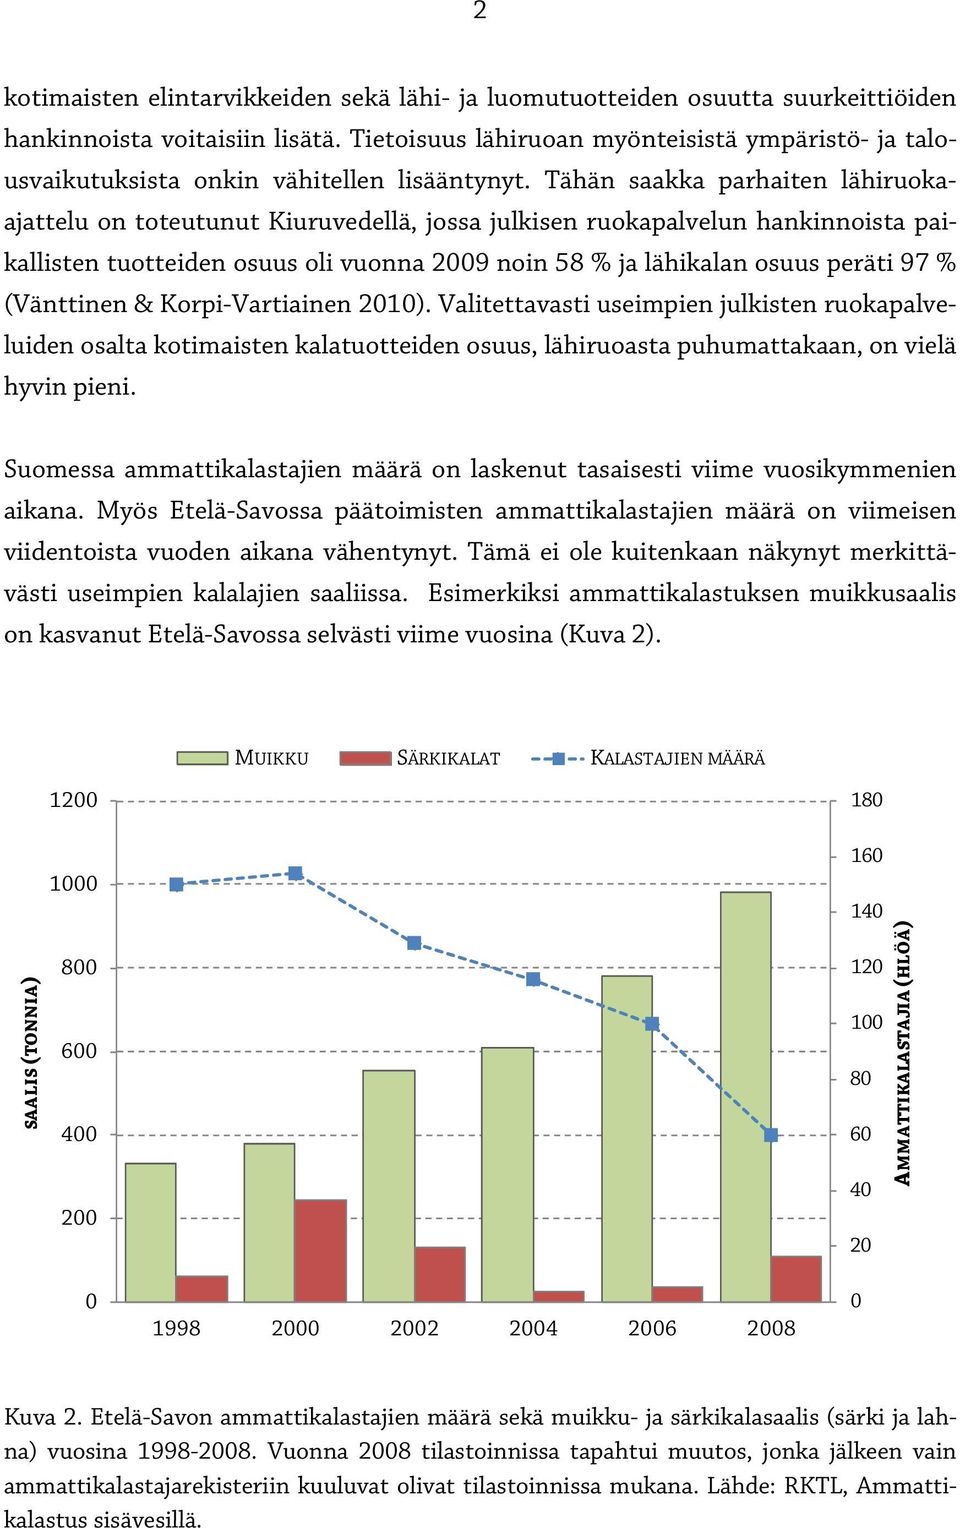 Tähän saakka parhaiten lähiruokaajattelu on toteutunut Kiuruvedellä, jossa julkisen ruokapalvelun hankinnoista paikallisten tuotteiden osuus oli vuonna 2009 noin 58 % ja lähikalan osuus peräti 97 %